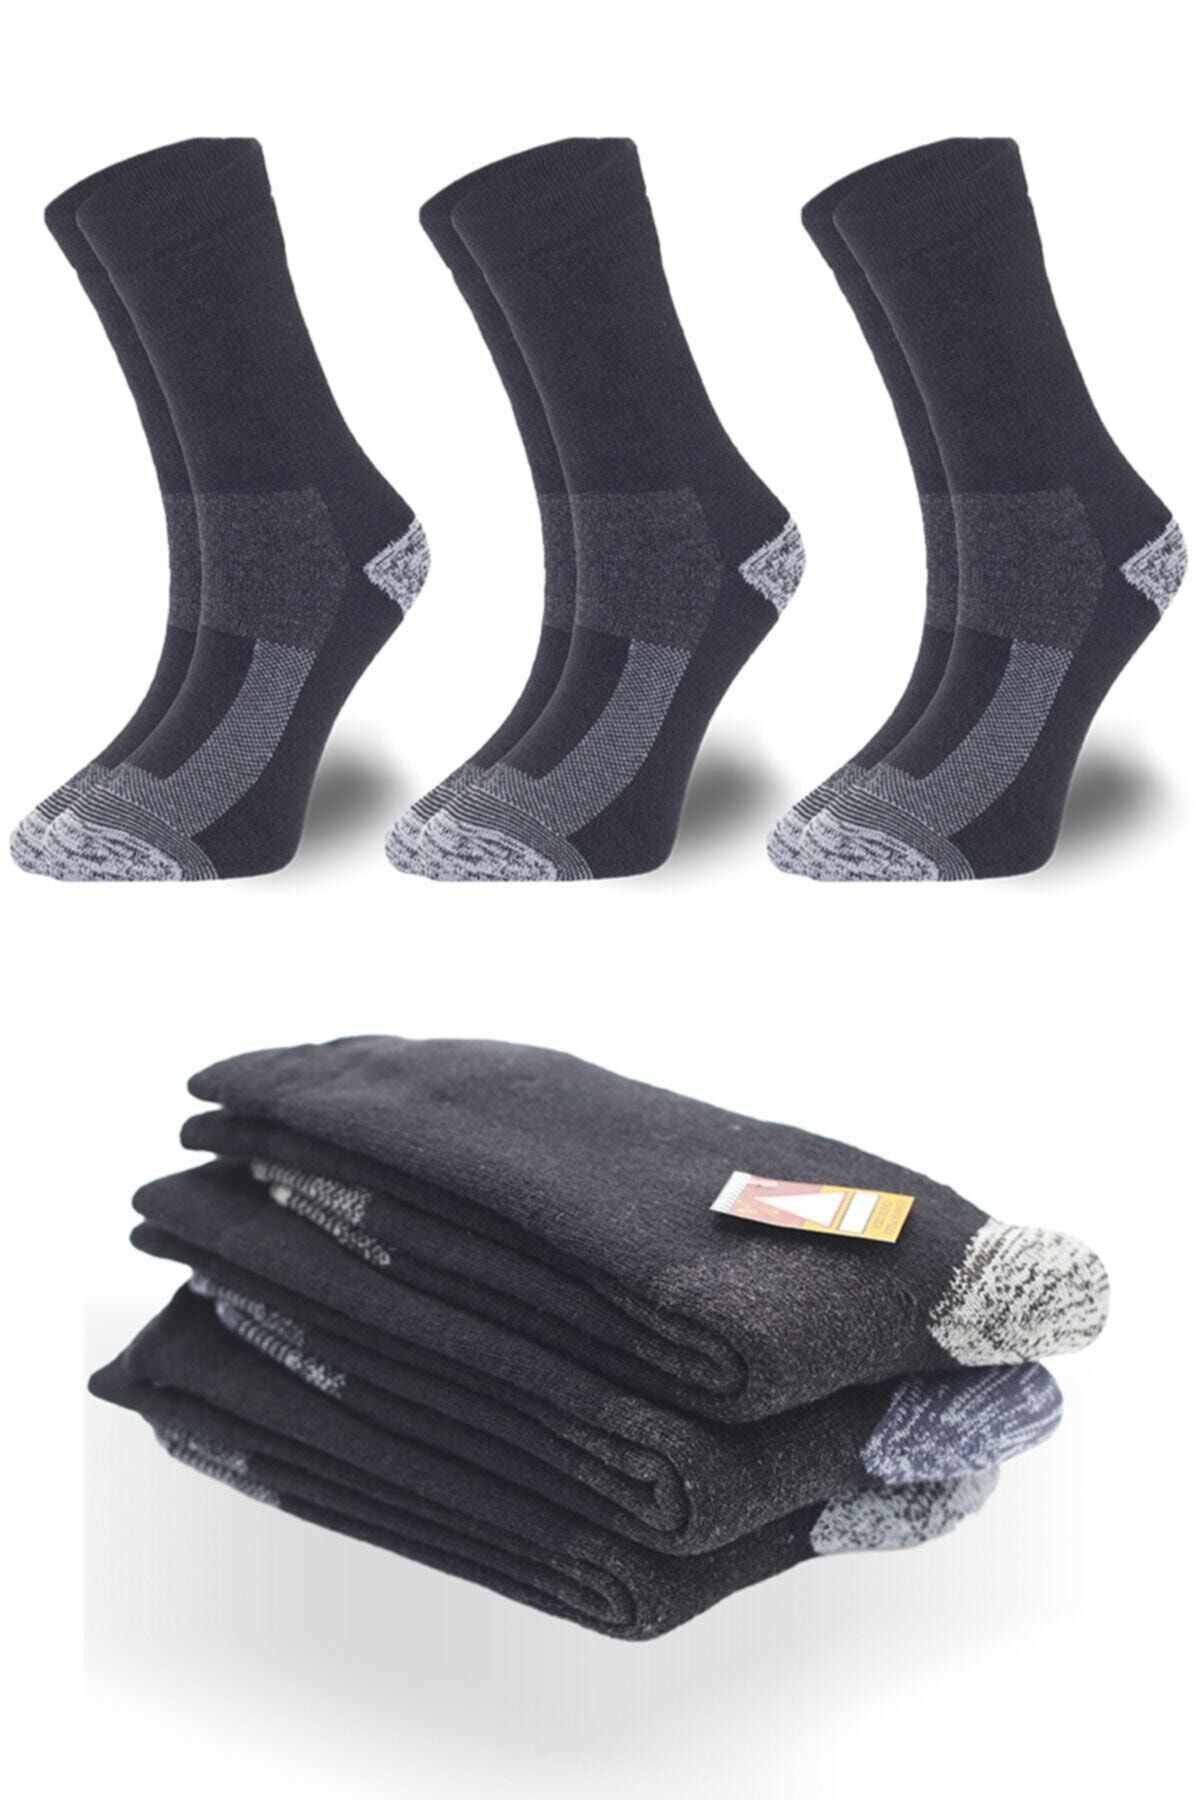 topsocks Unisex Siyah Sıcak Termal Yünlü Çorap 3'lü